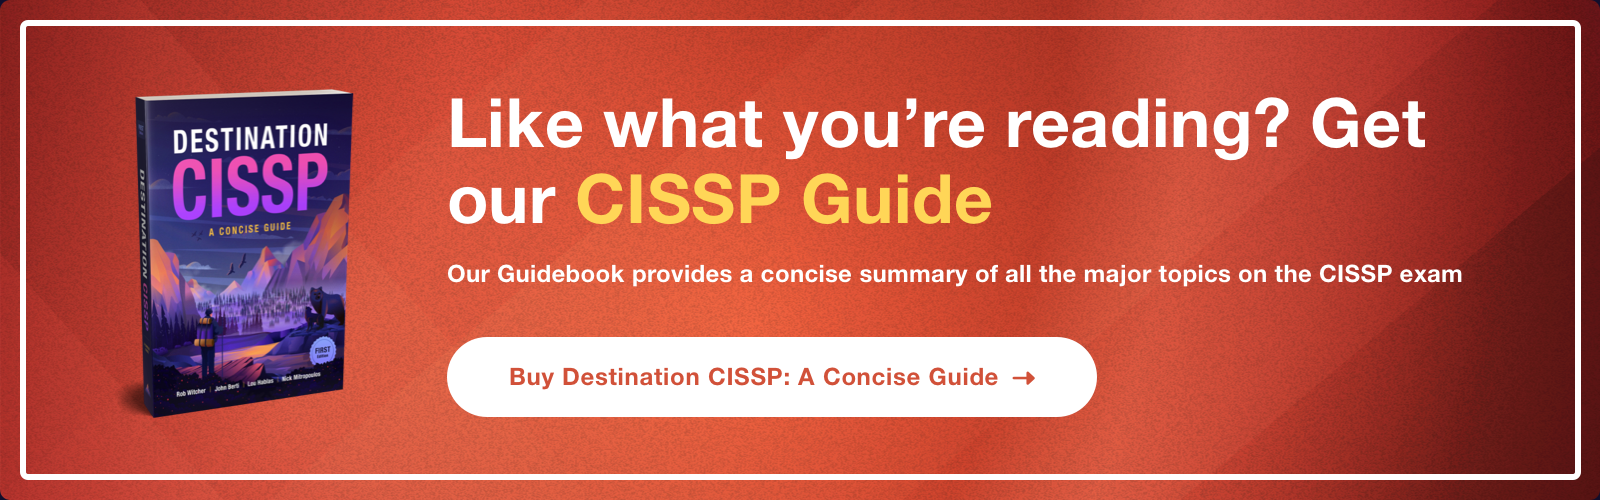 Get our CISSP guide ad - Destination Certification